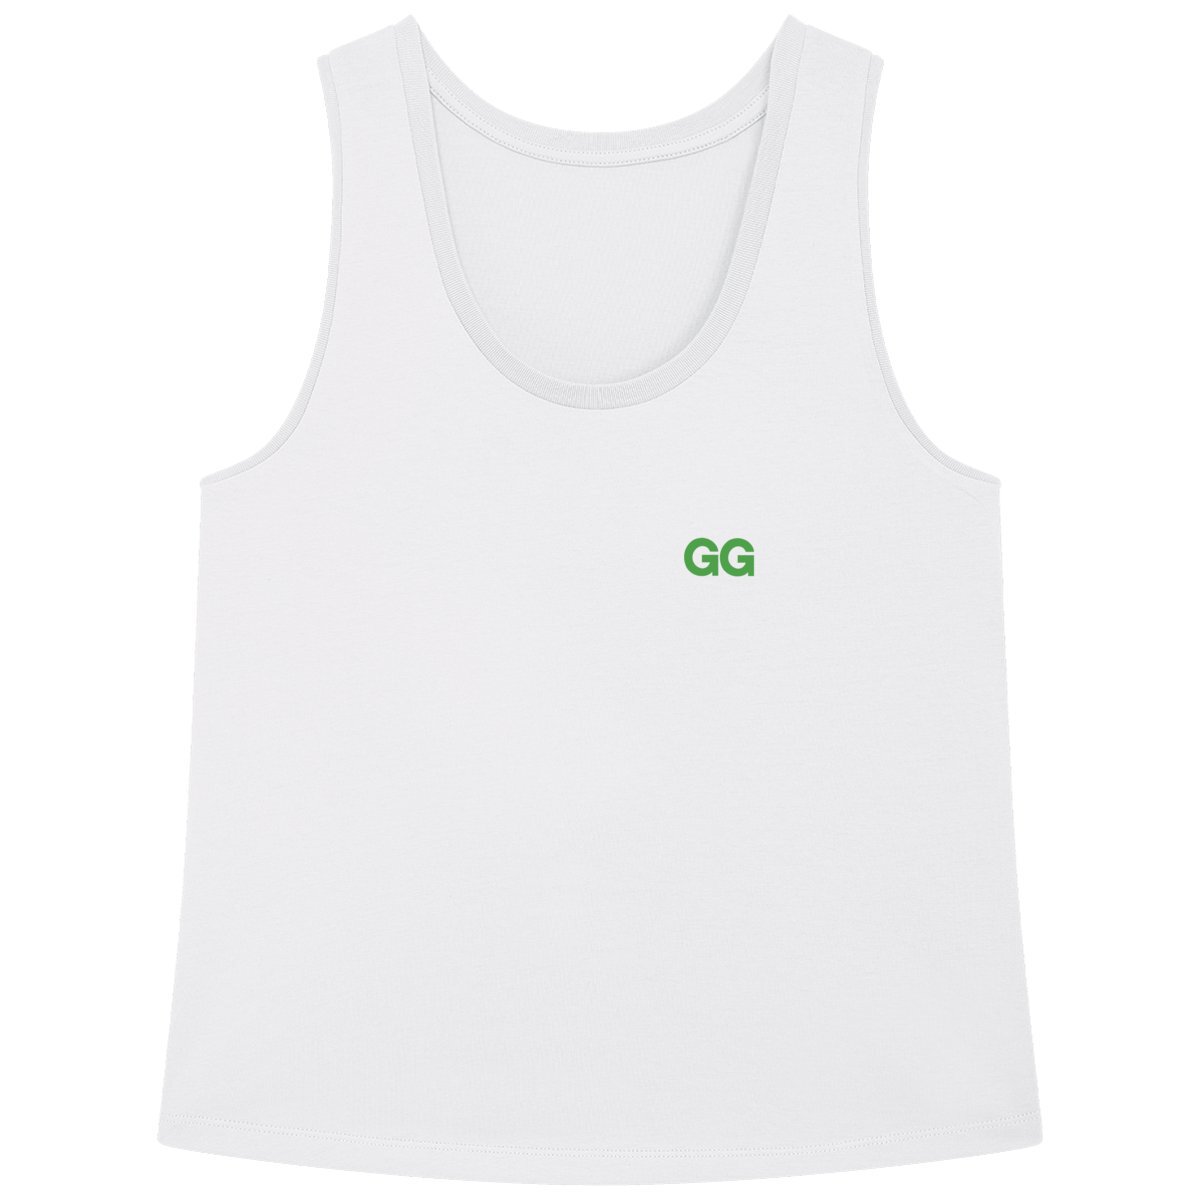 Green GG Women's Flowing Organic Tank Top